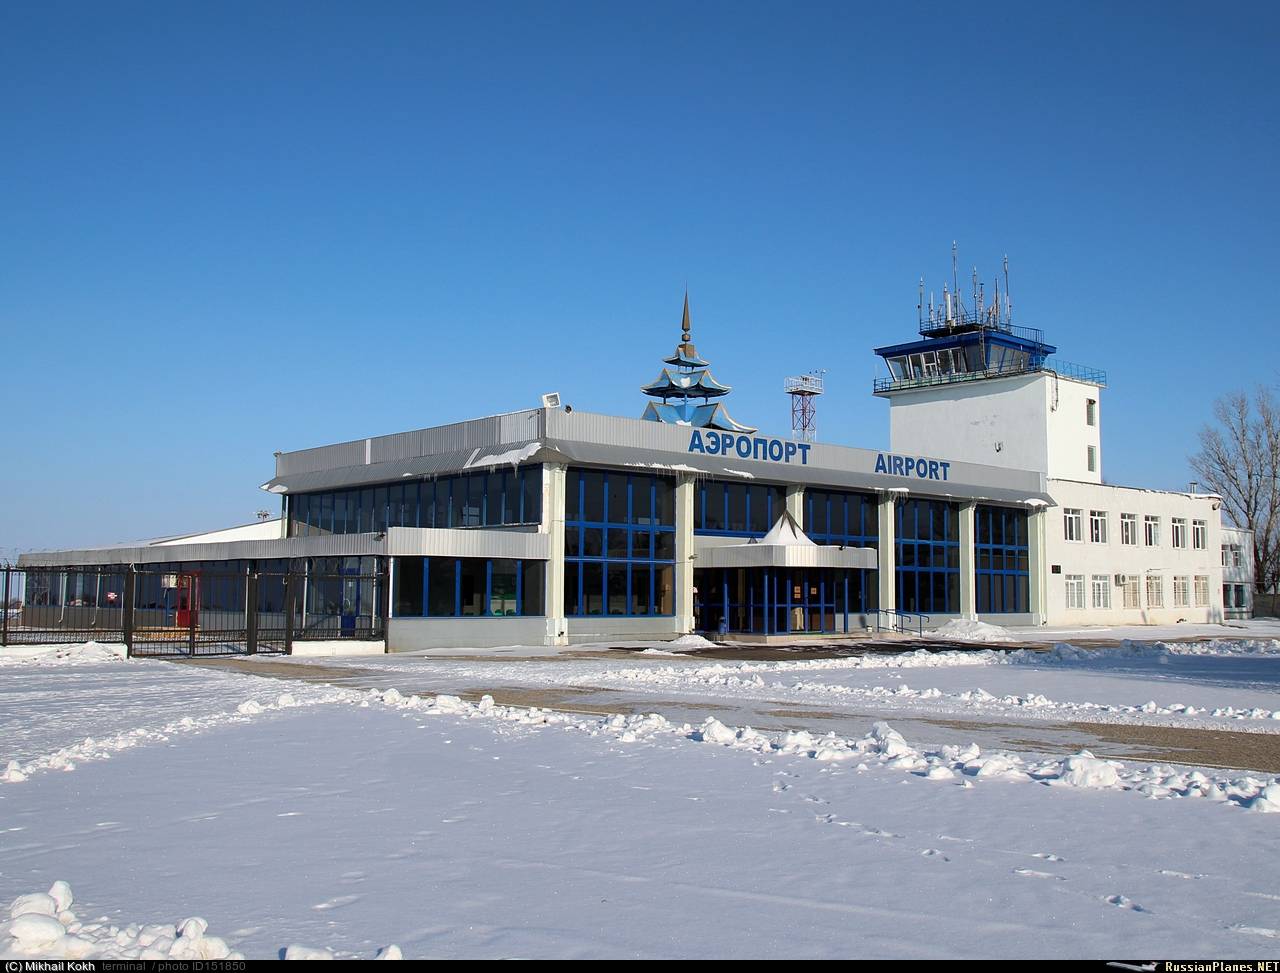 Аэропорт элиста elista airport. официальный сайт